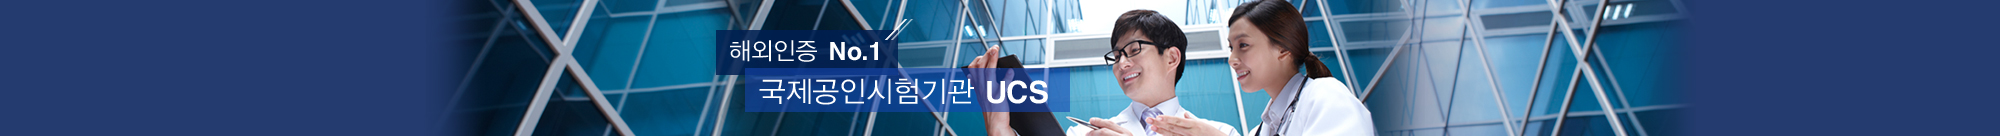 해외인증 NO.1 국제공인시험기관 UCS